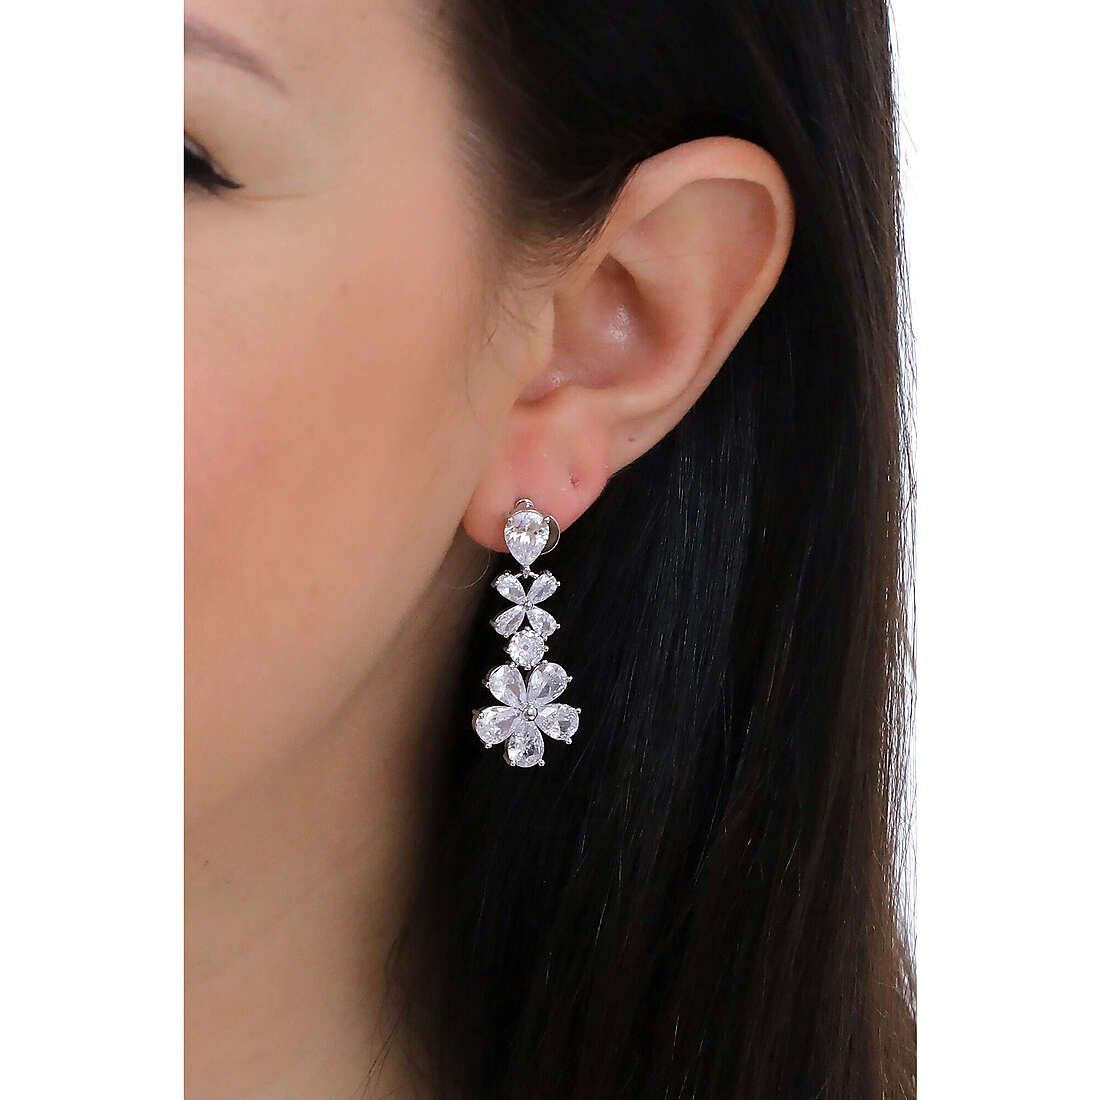 Ottaviani earrings Elegance woman 500689O wearing